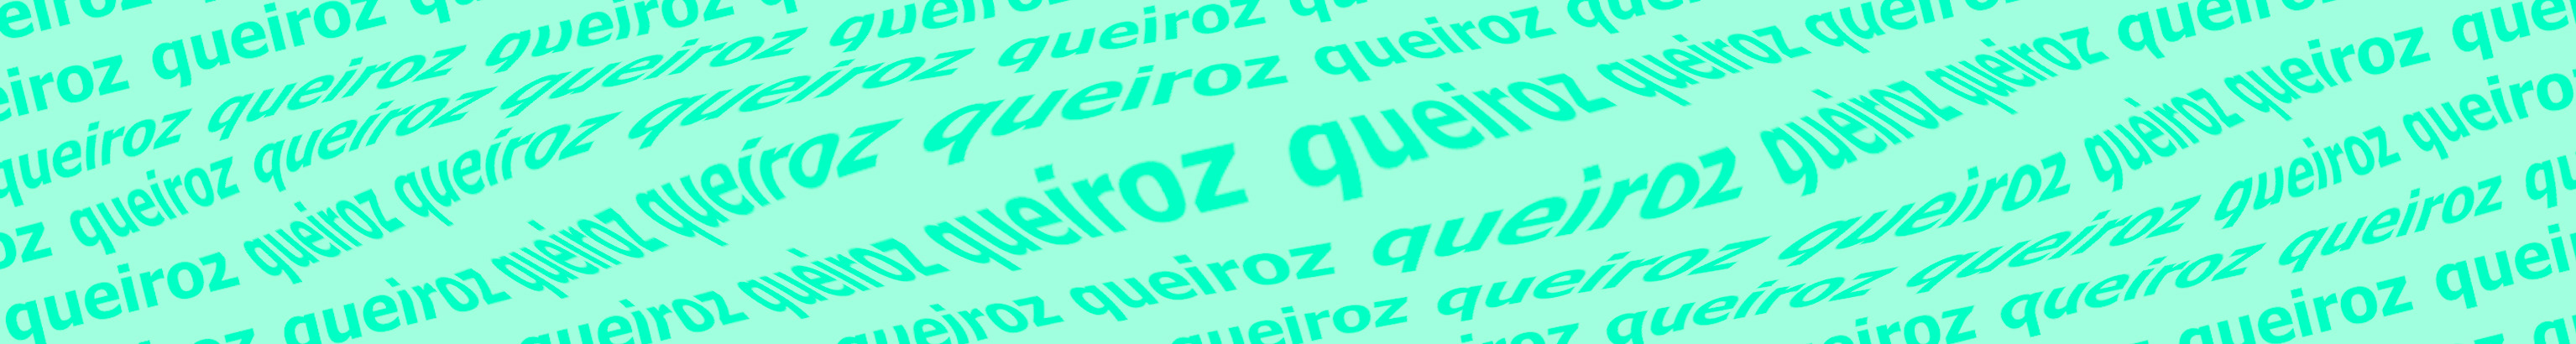 João Queiroz's profile banner